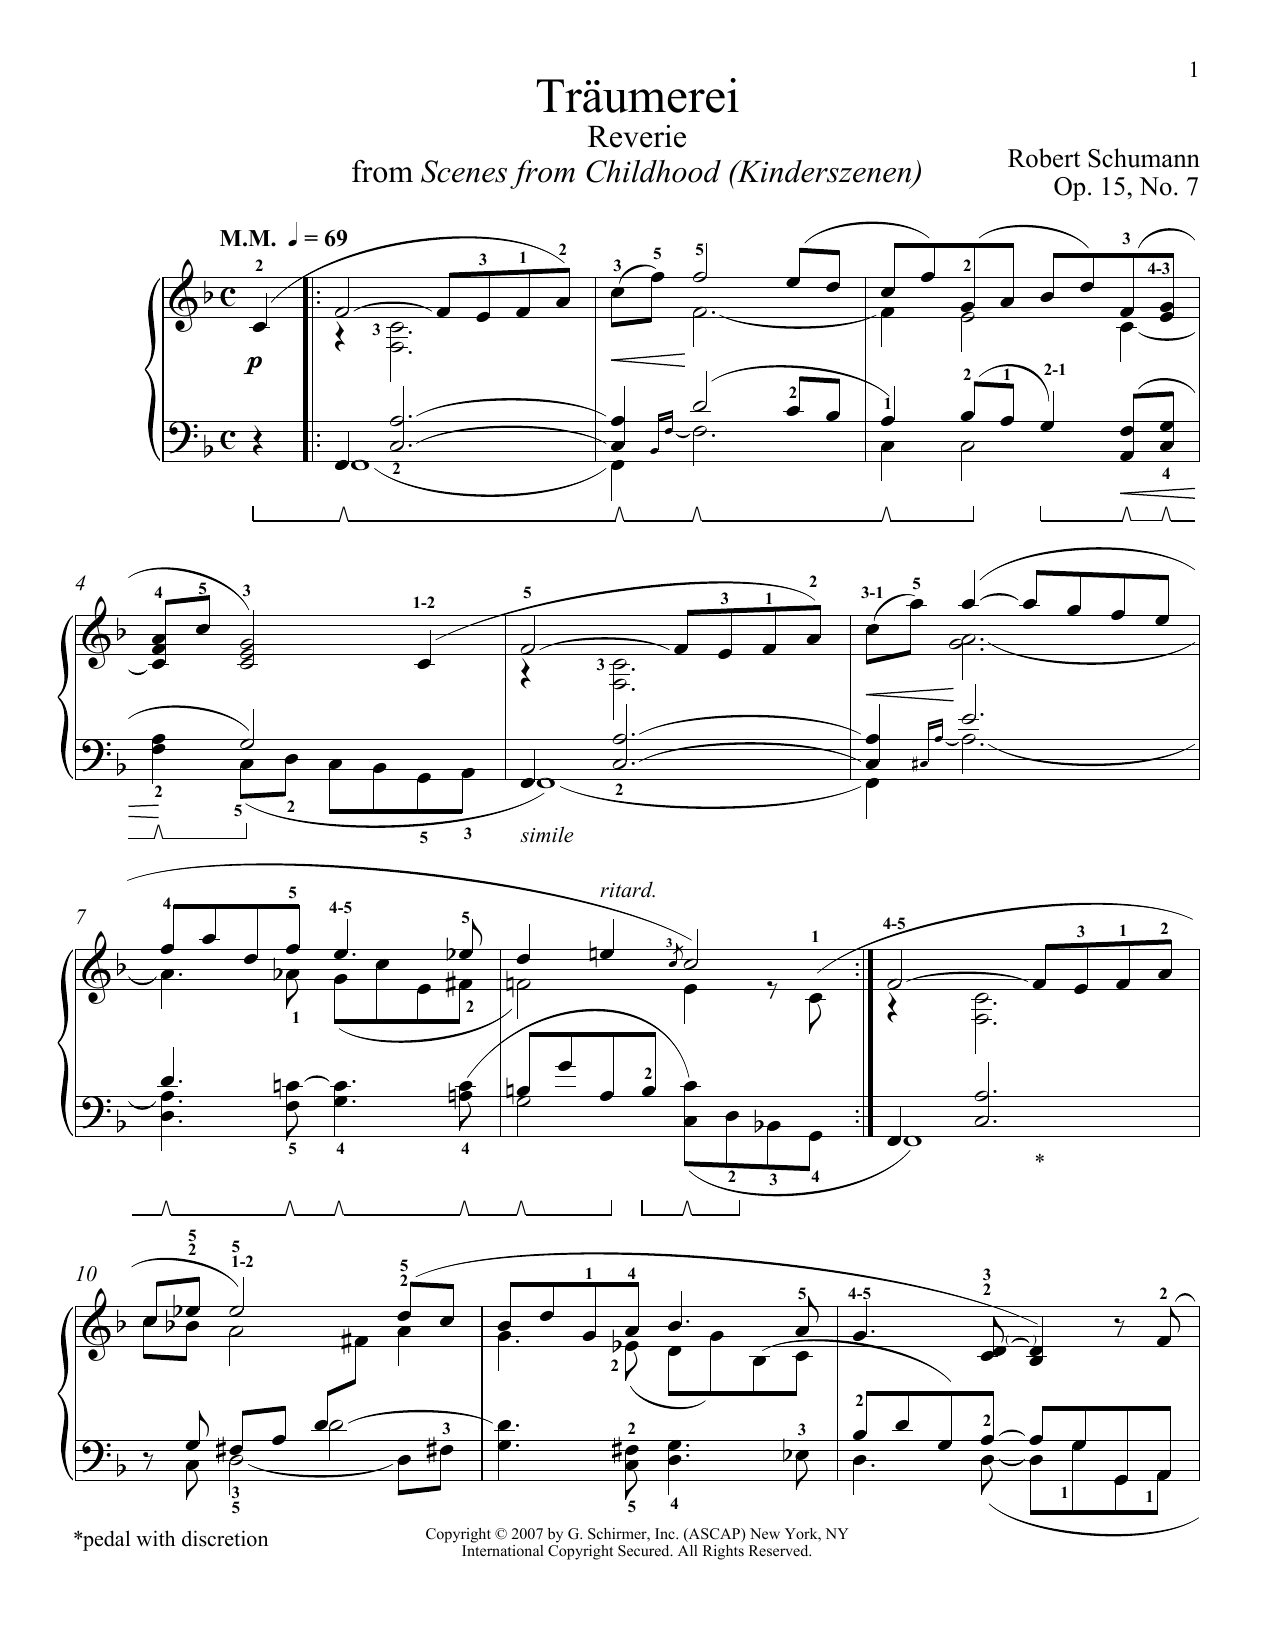 Download Robert Schumann Traumerei Sheet Music